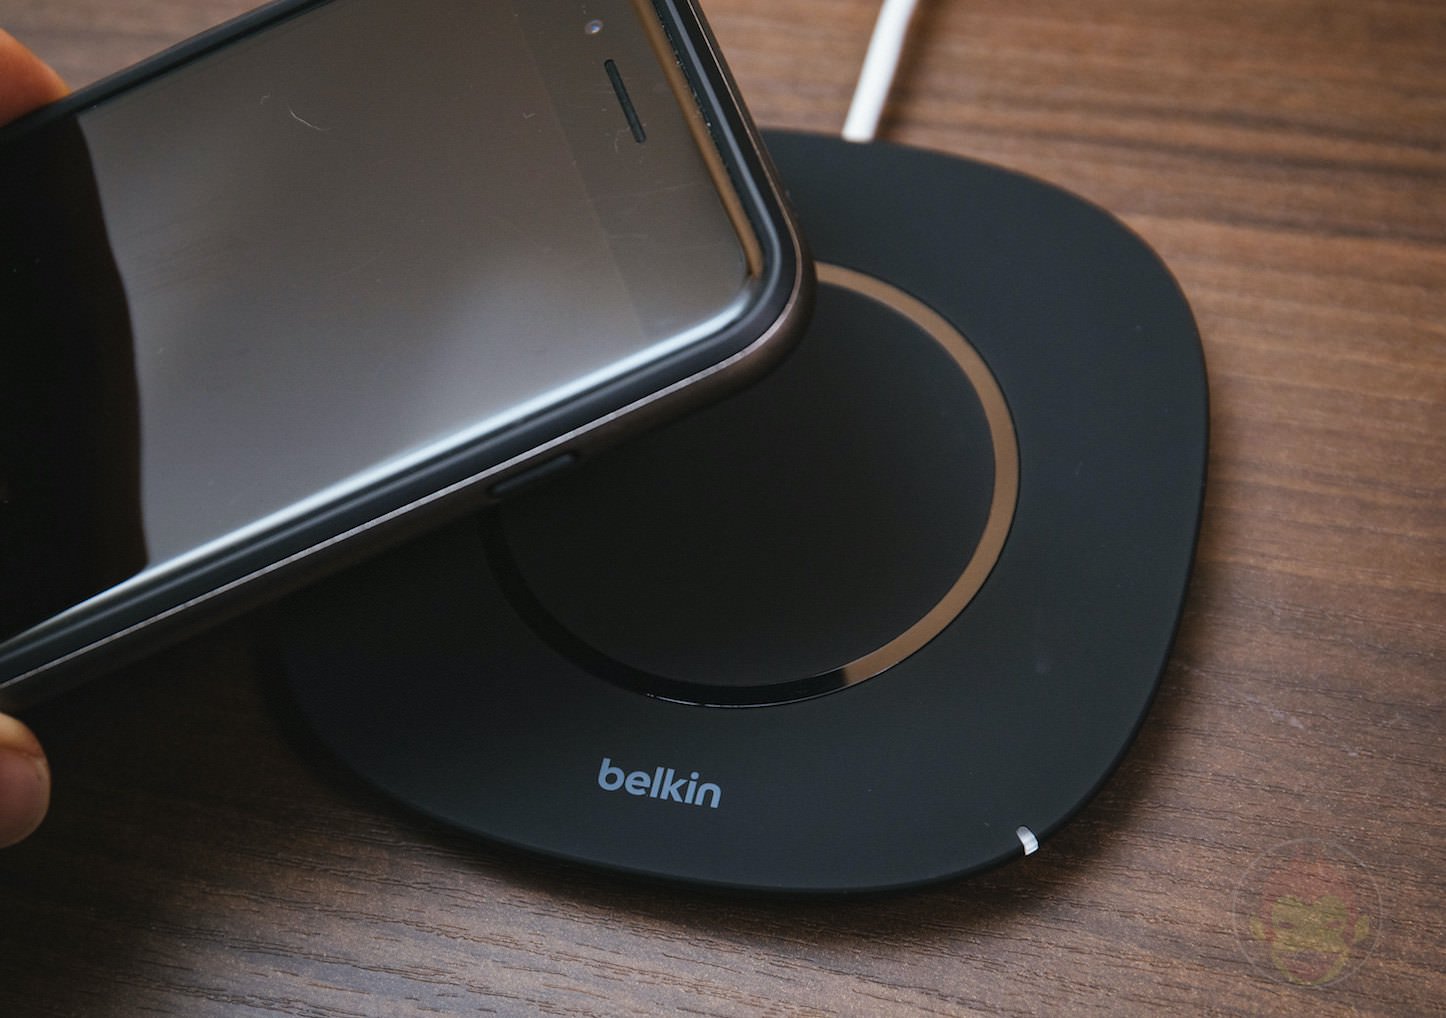 Belkin-Boost-Up-Qi-Wireless-Charing-Pad-5W-04.jpg